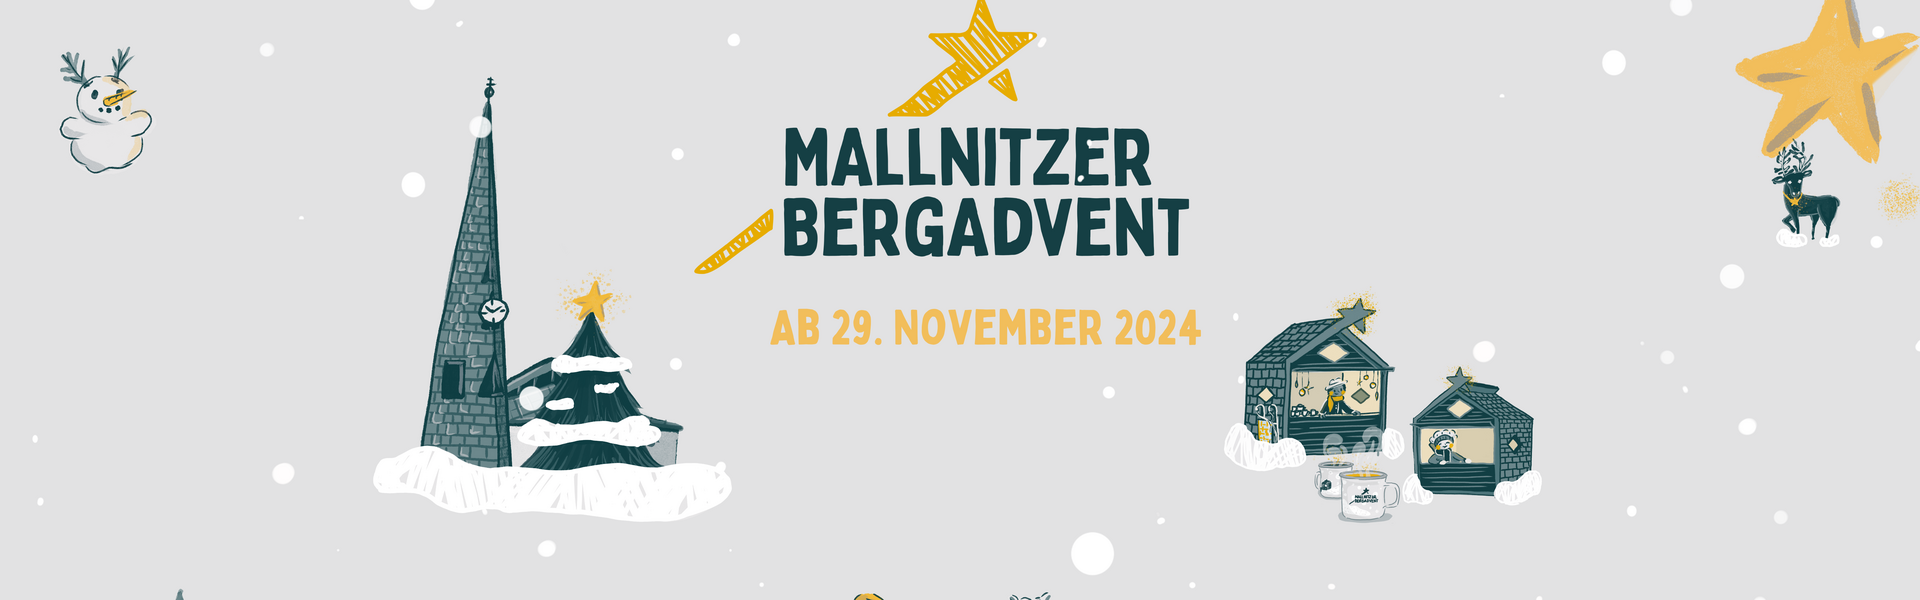 Mallnitzer Bergadvent 2024